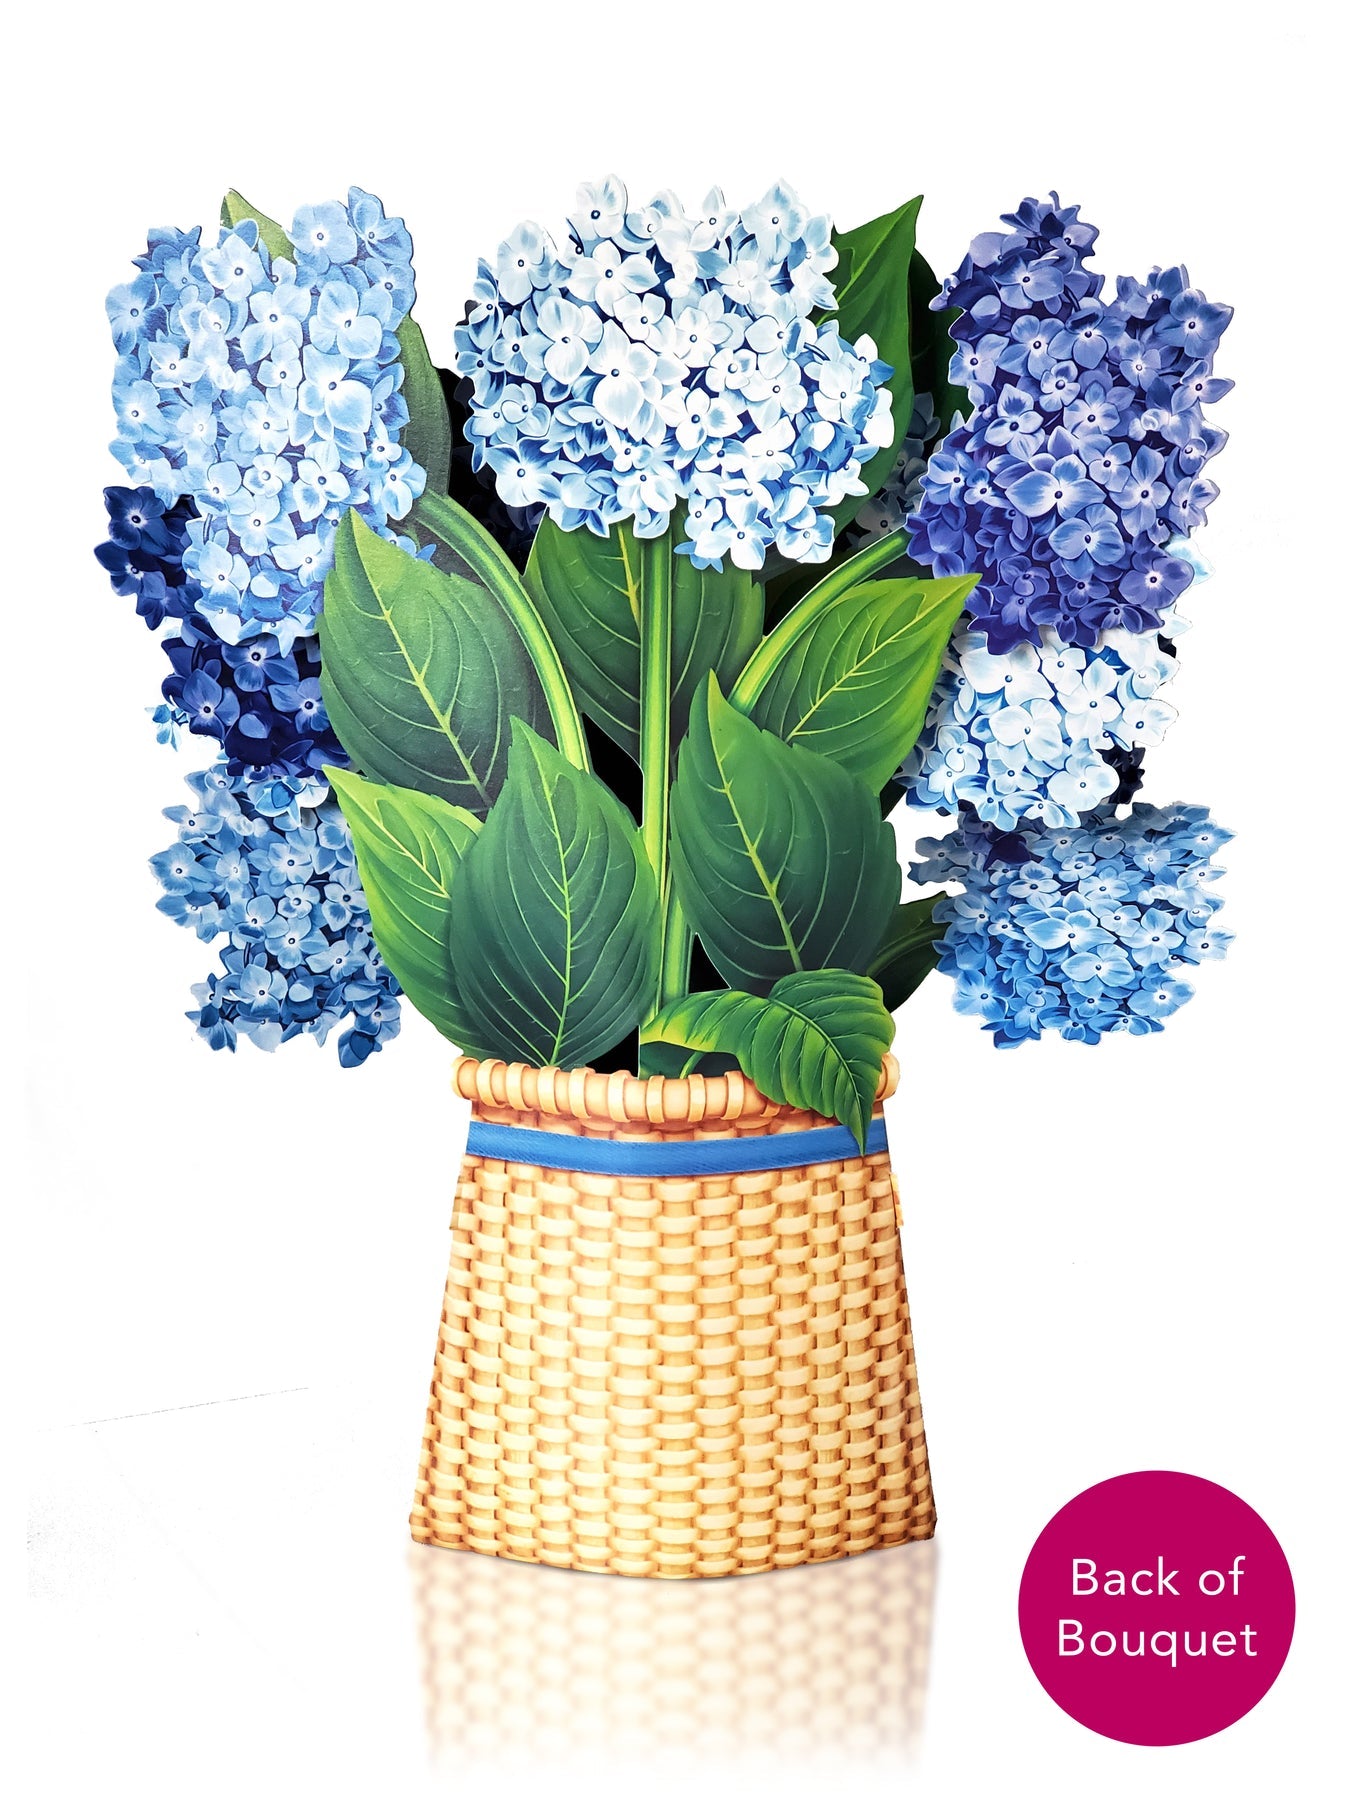 Nantucket Hydrangea 3D Pop Up Bouquet